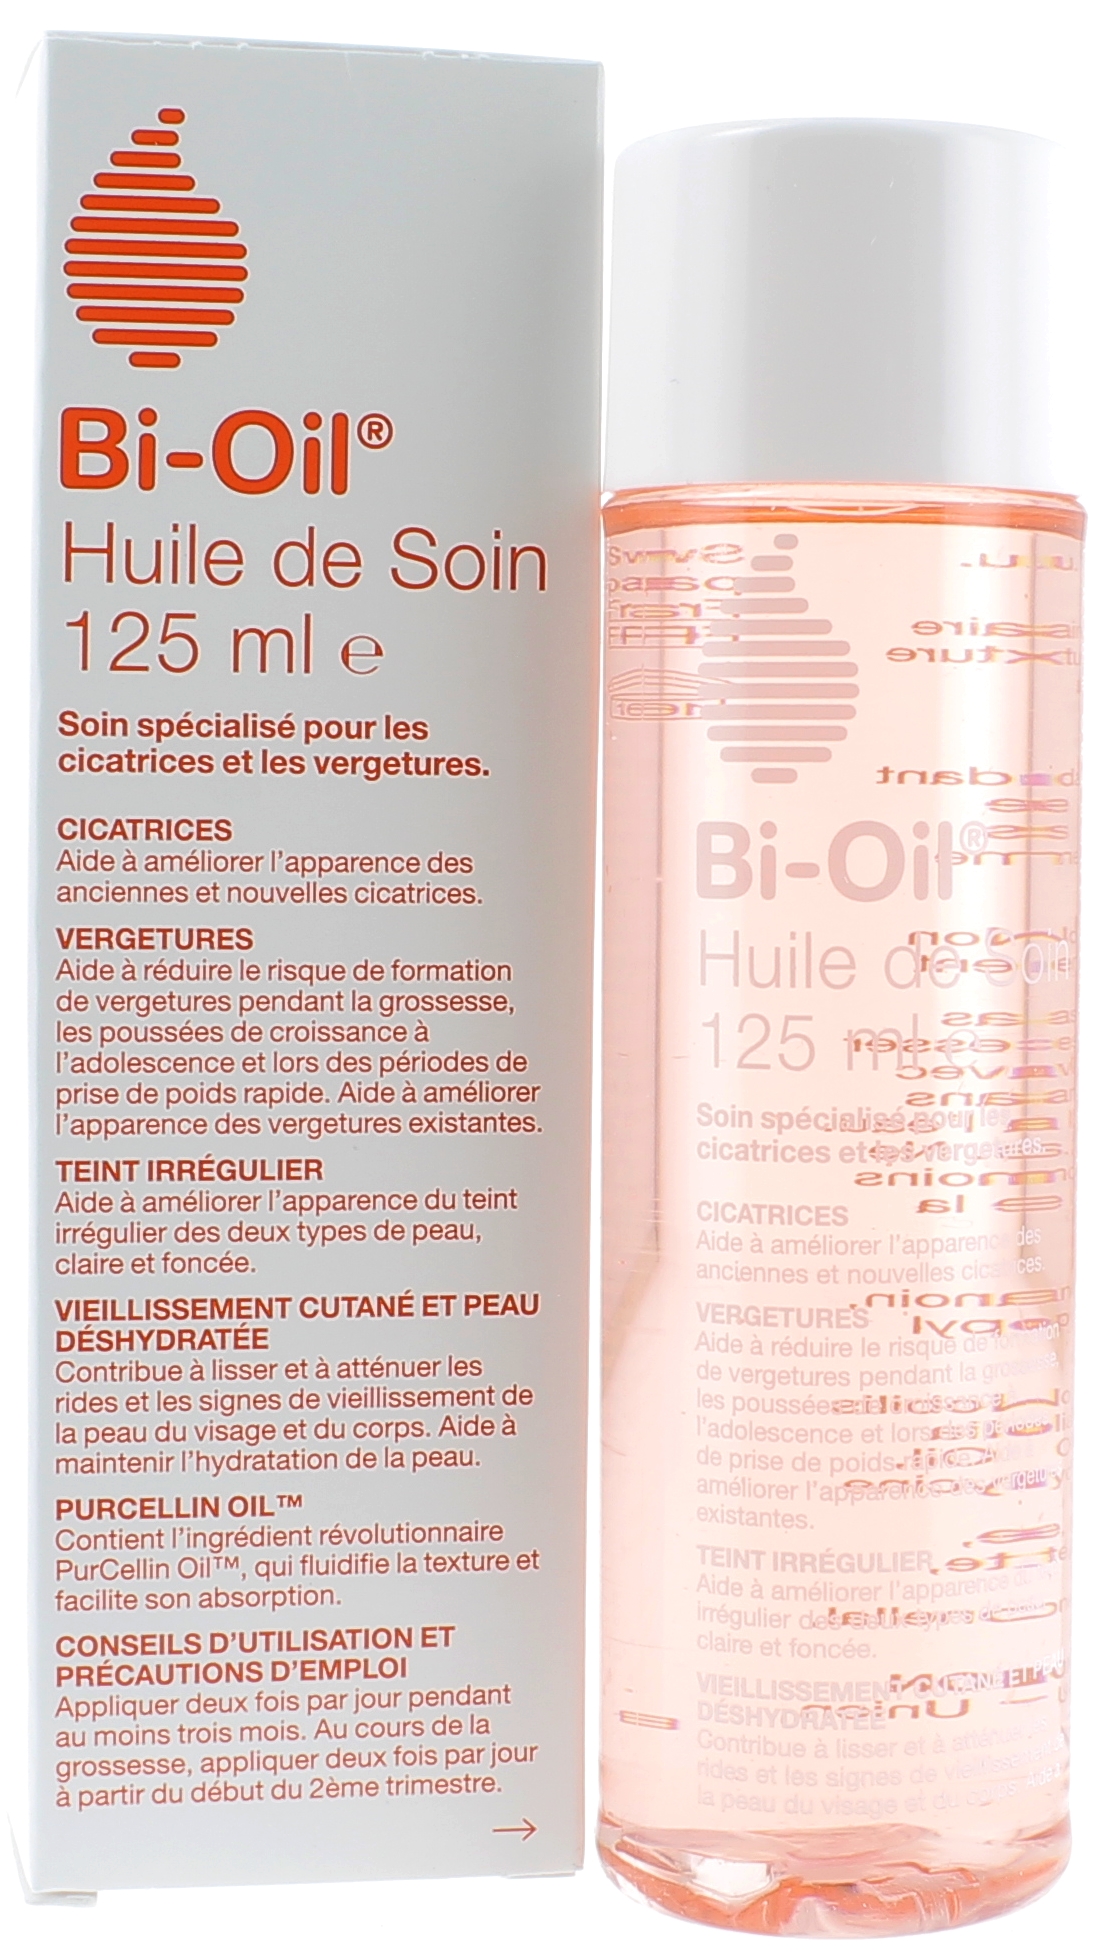 Bi-Oil Huile de Soin Pour la Peau - Soin Spécialisé pour les Vergetures,  Cicatrices, Peau Sèche et Teint Irrégulier - 1 x 200 ml